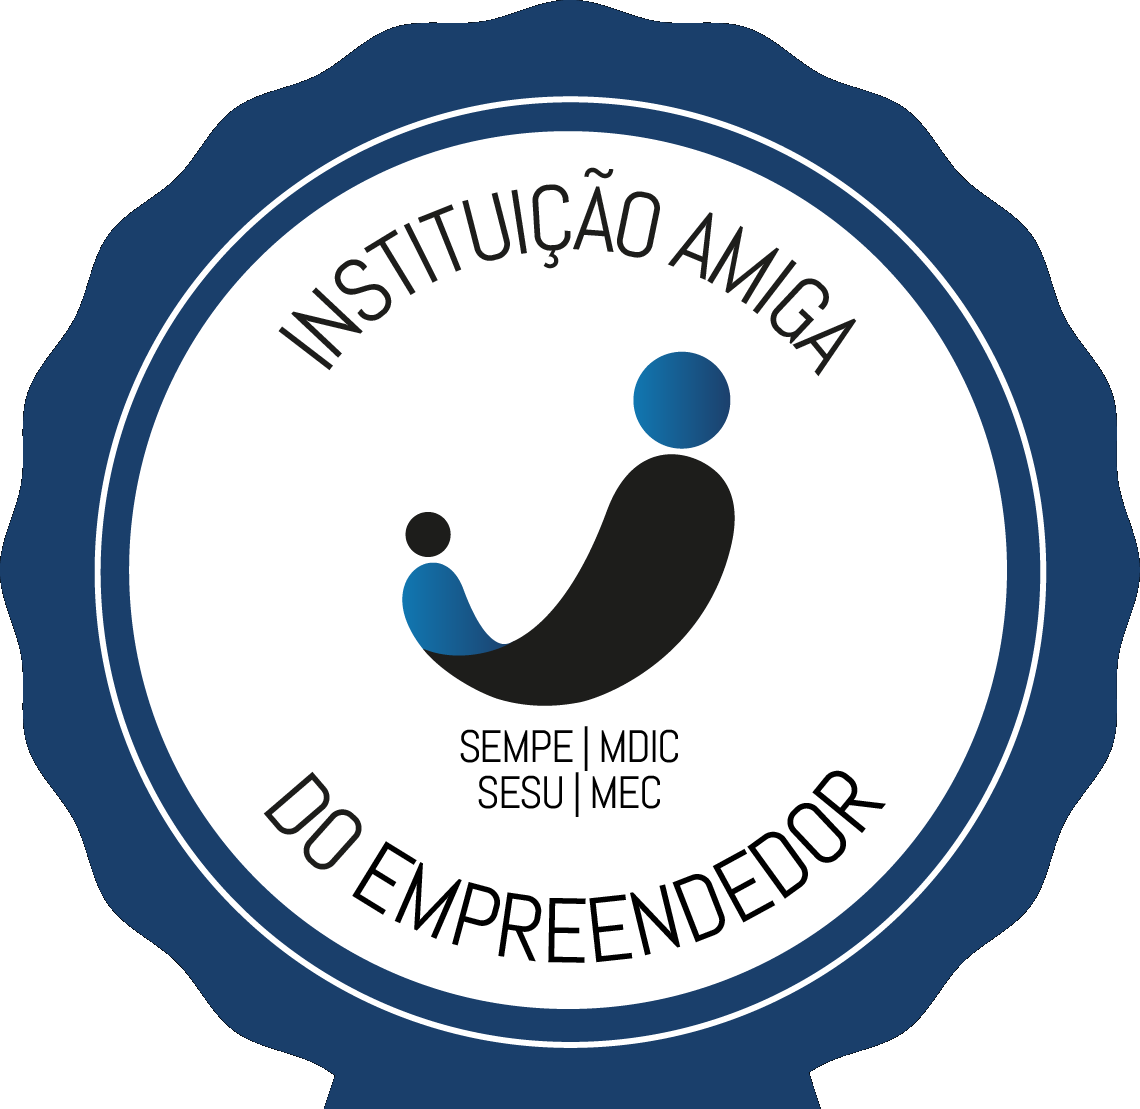 IFRO adquire selo de Instituição Amiga do Empreendedor